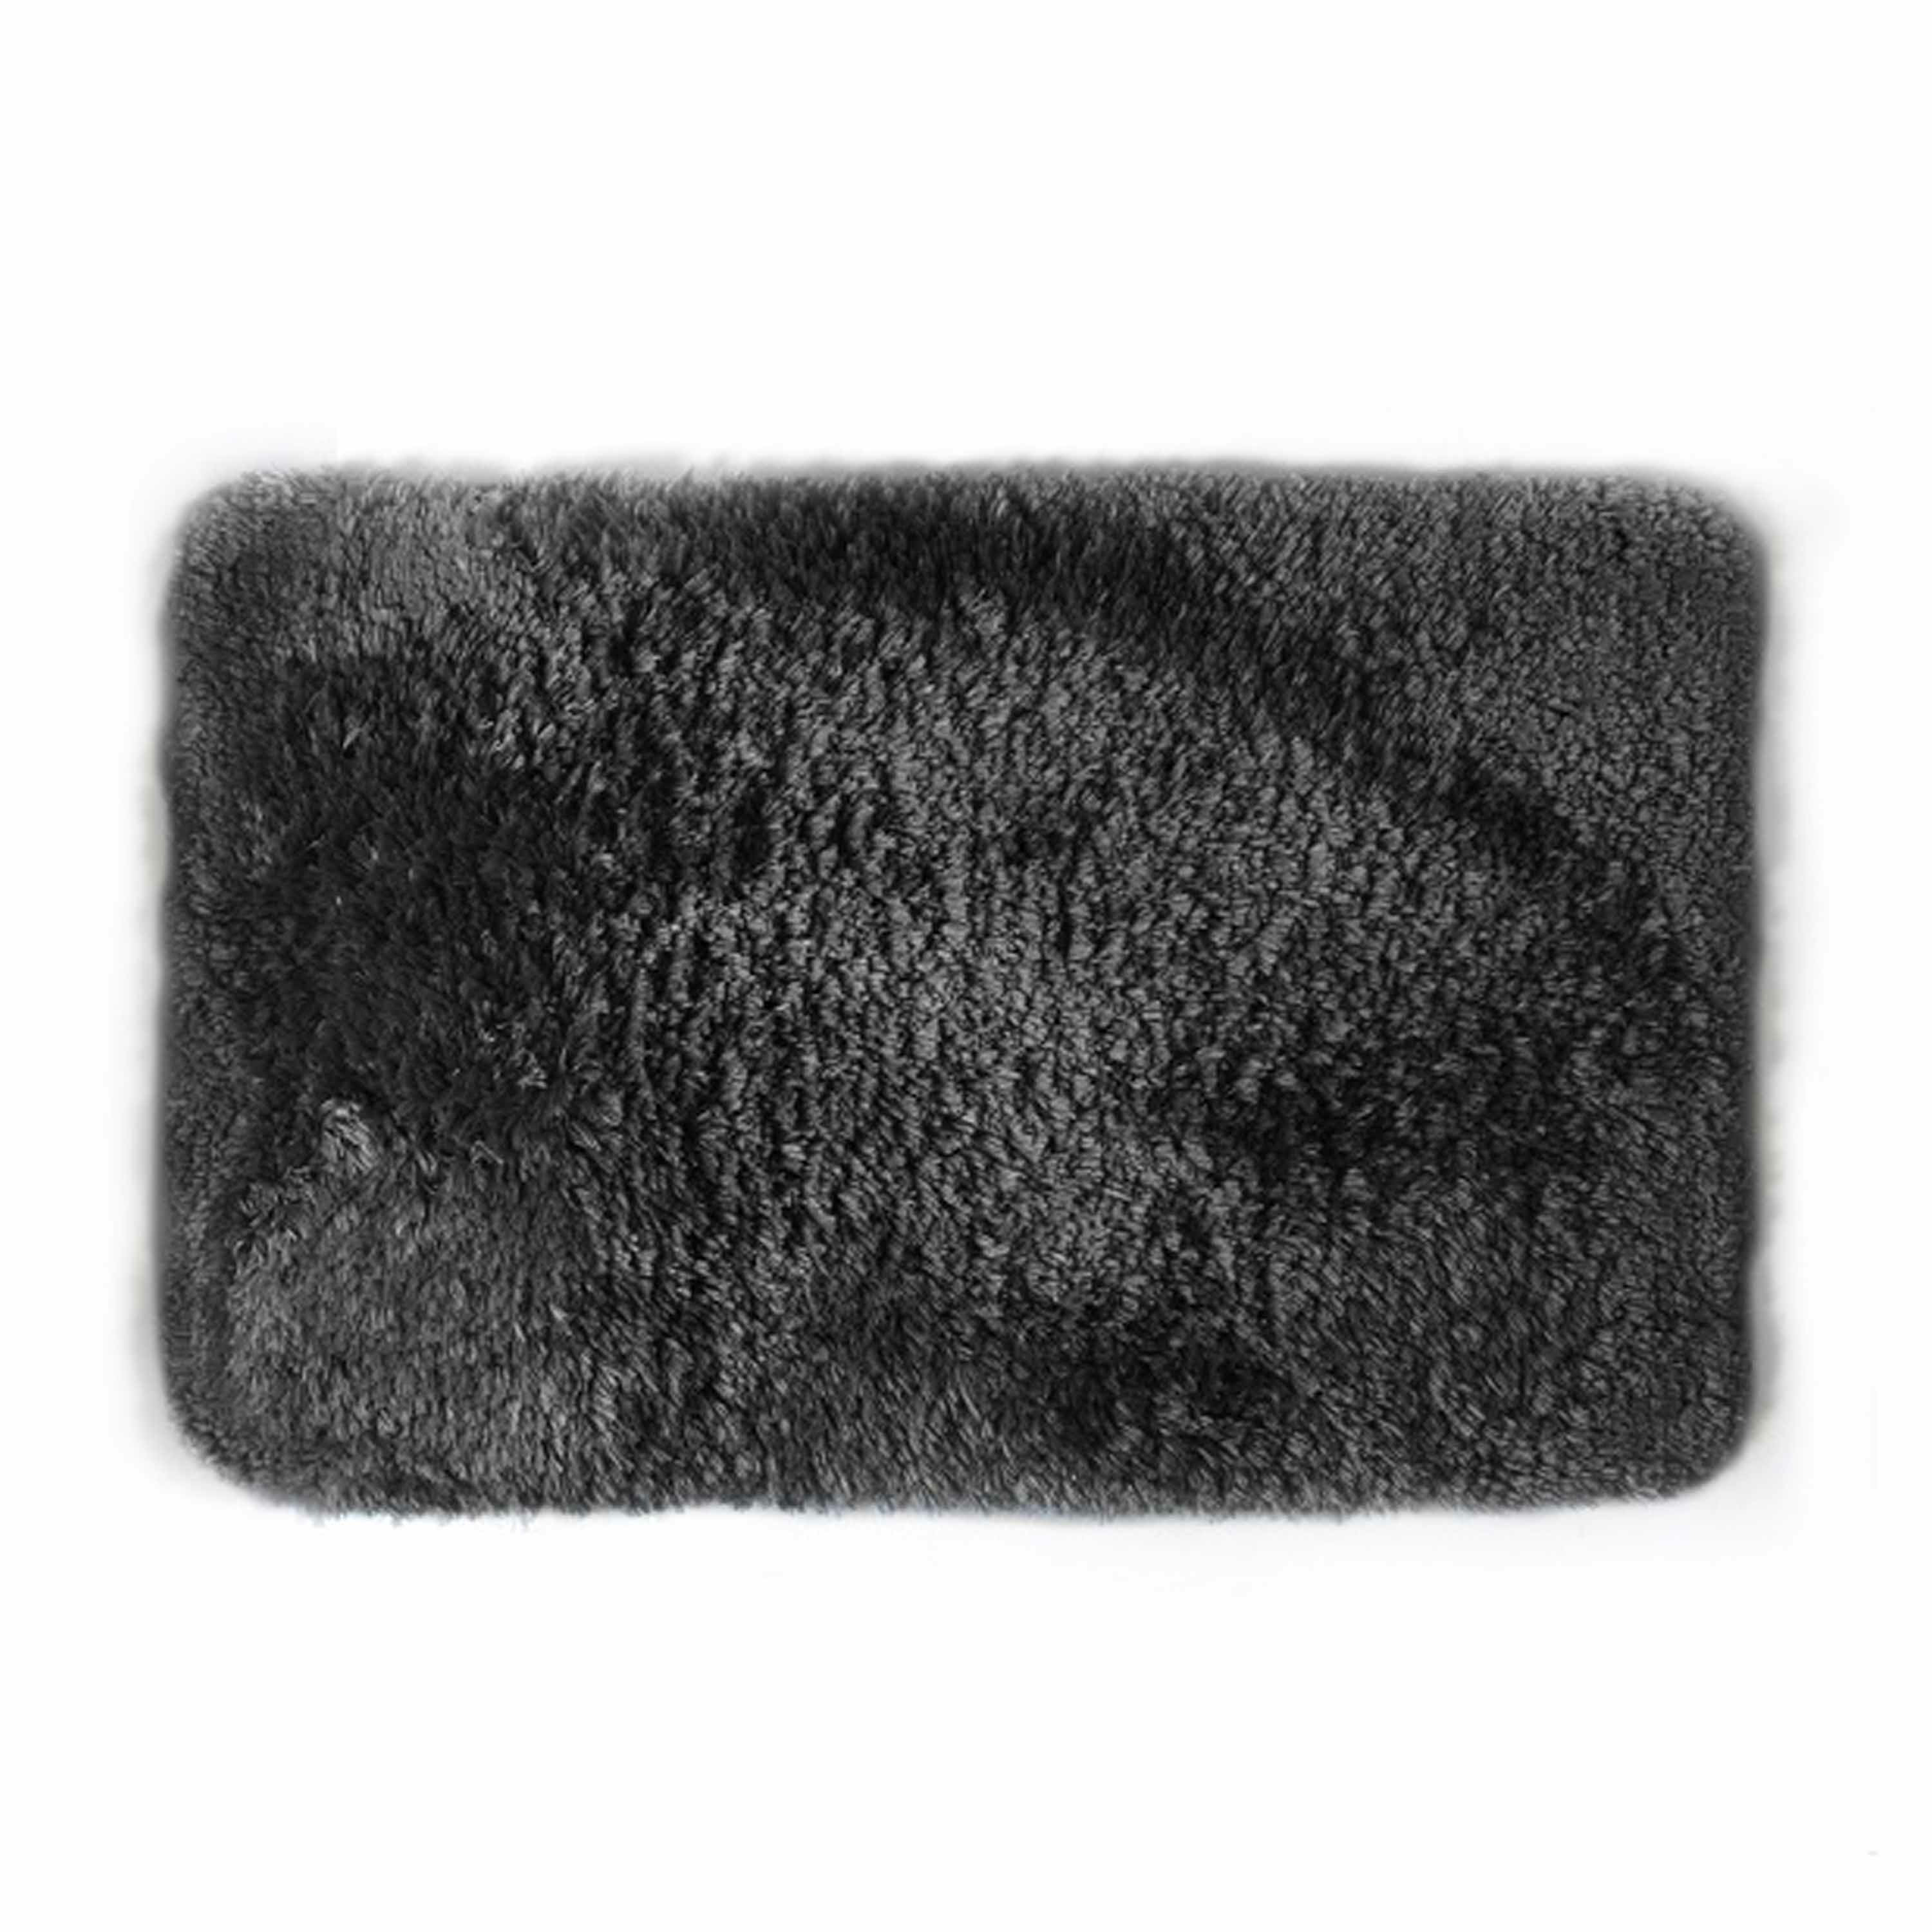 Spirella badkamer vloer kleedje-badmat tapijt hoogpolig luxe uitvoering zwart 40 x 60 cm